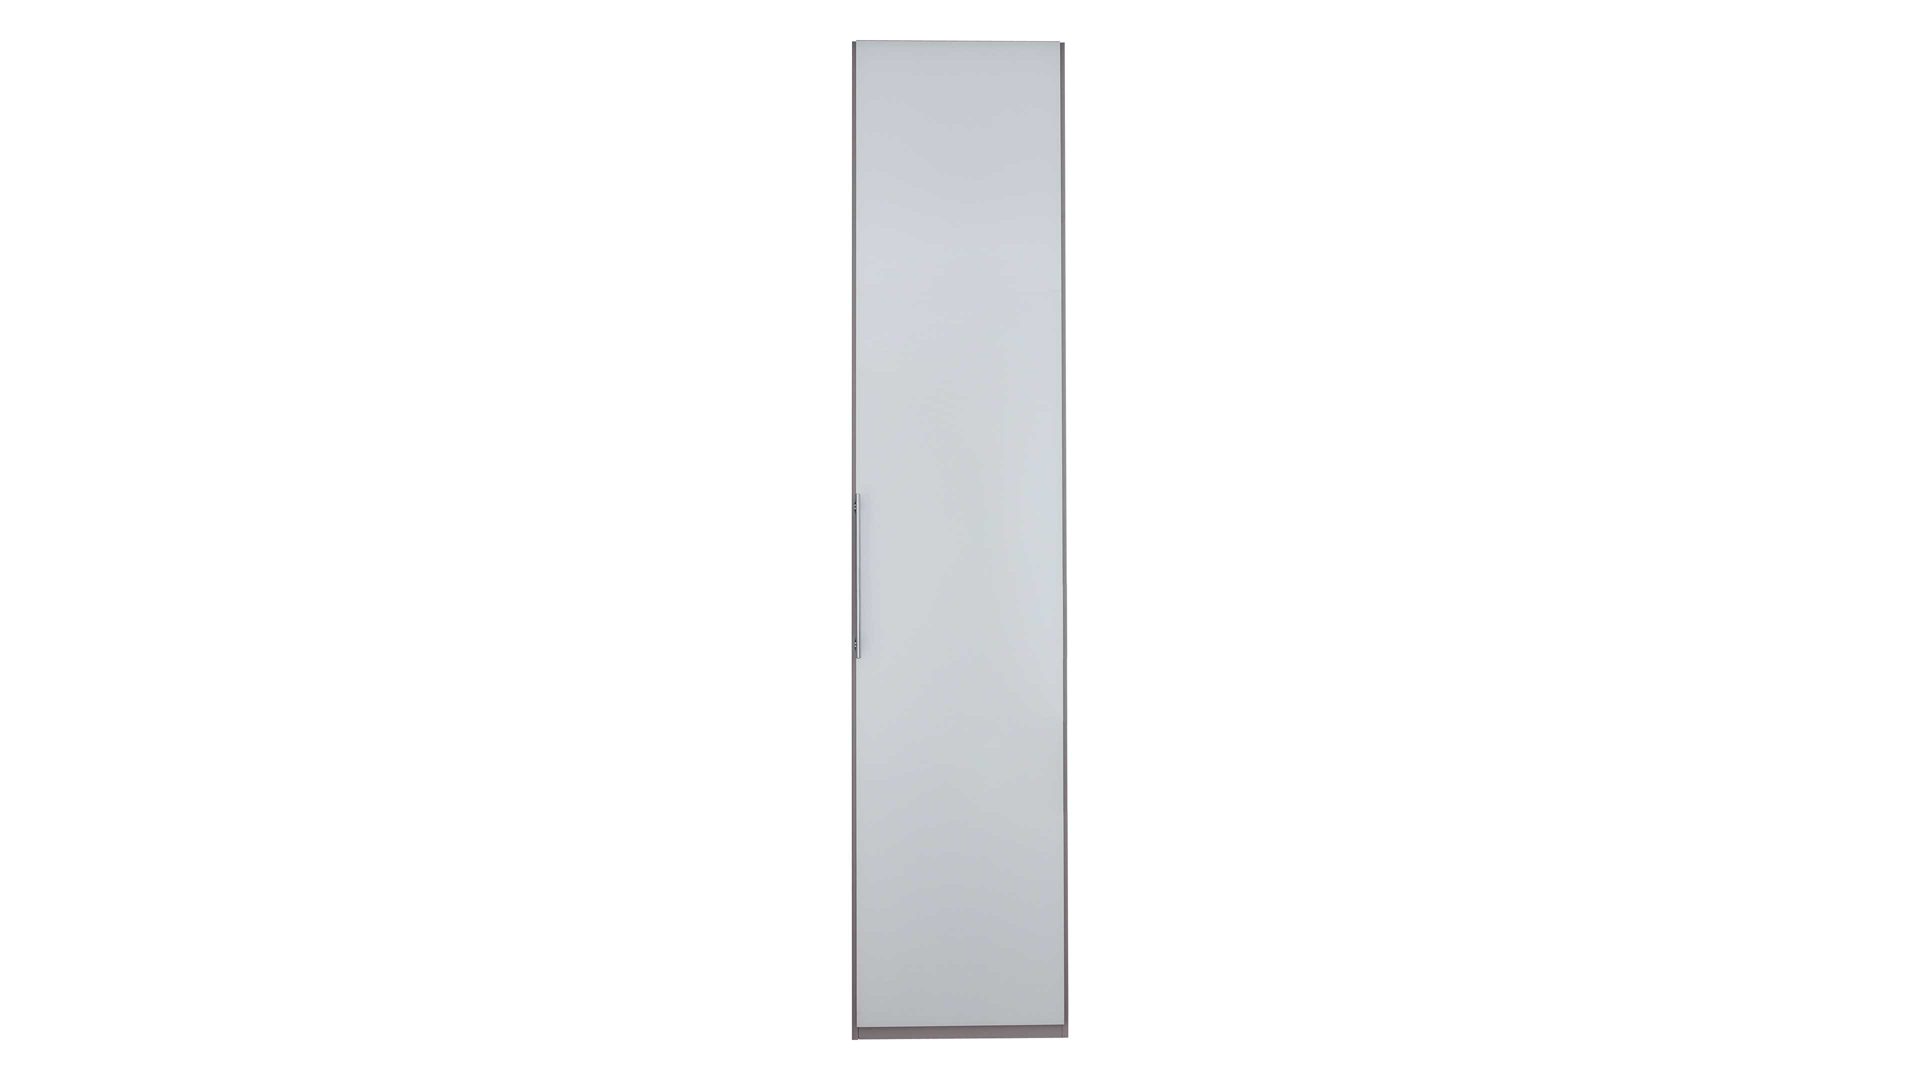 Kleiderschrank Interliving aus Holz in Weiß Interliving Kleiderschrank Serie 1205 – Kleiderschrank 044 weiße Glasfront – eine Tür, Breite ca. 38 cm